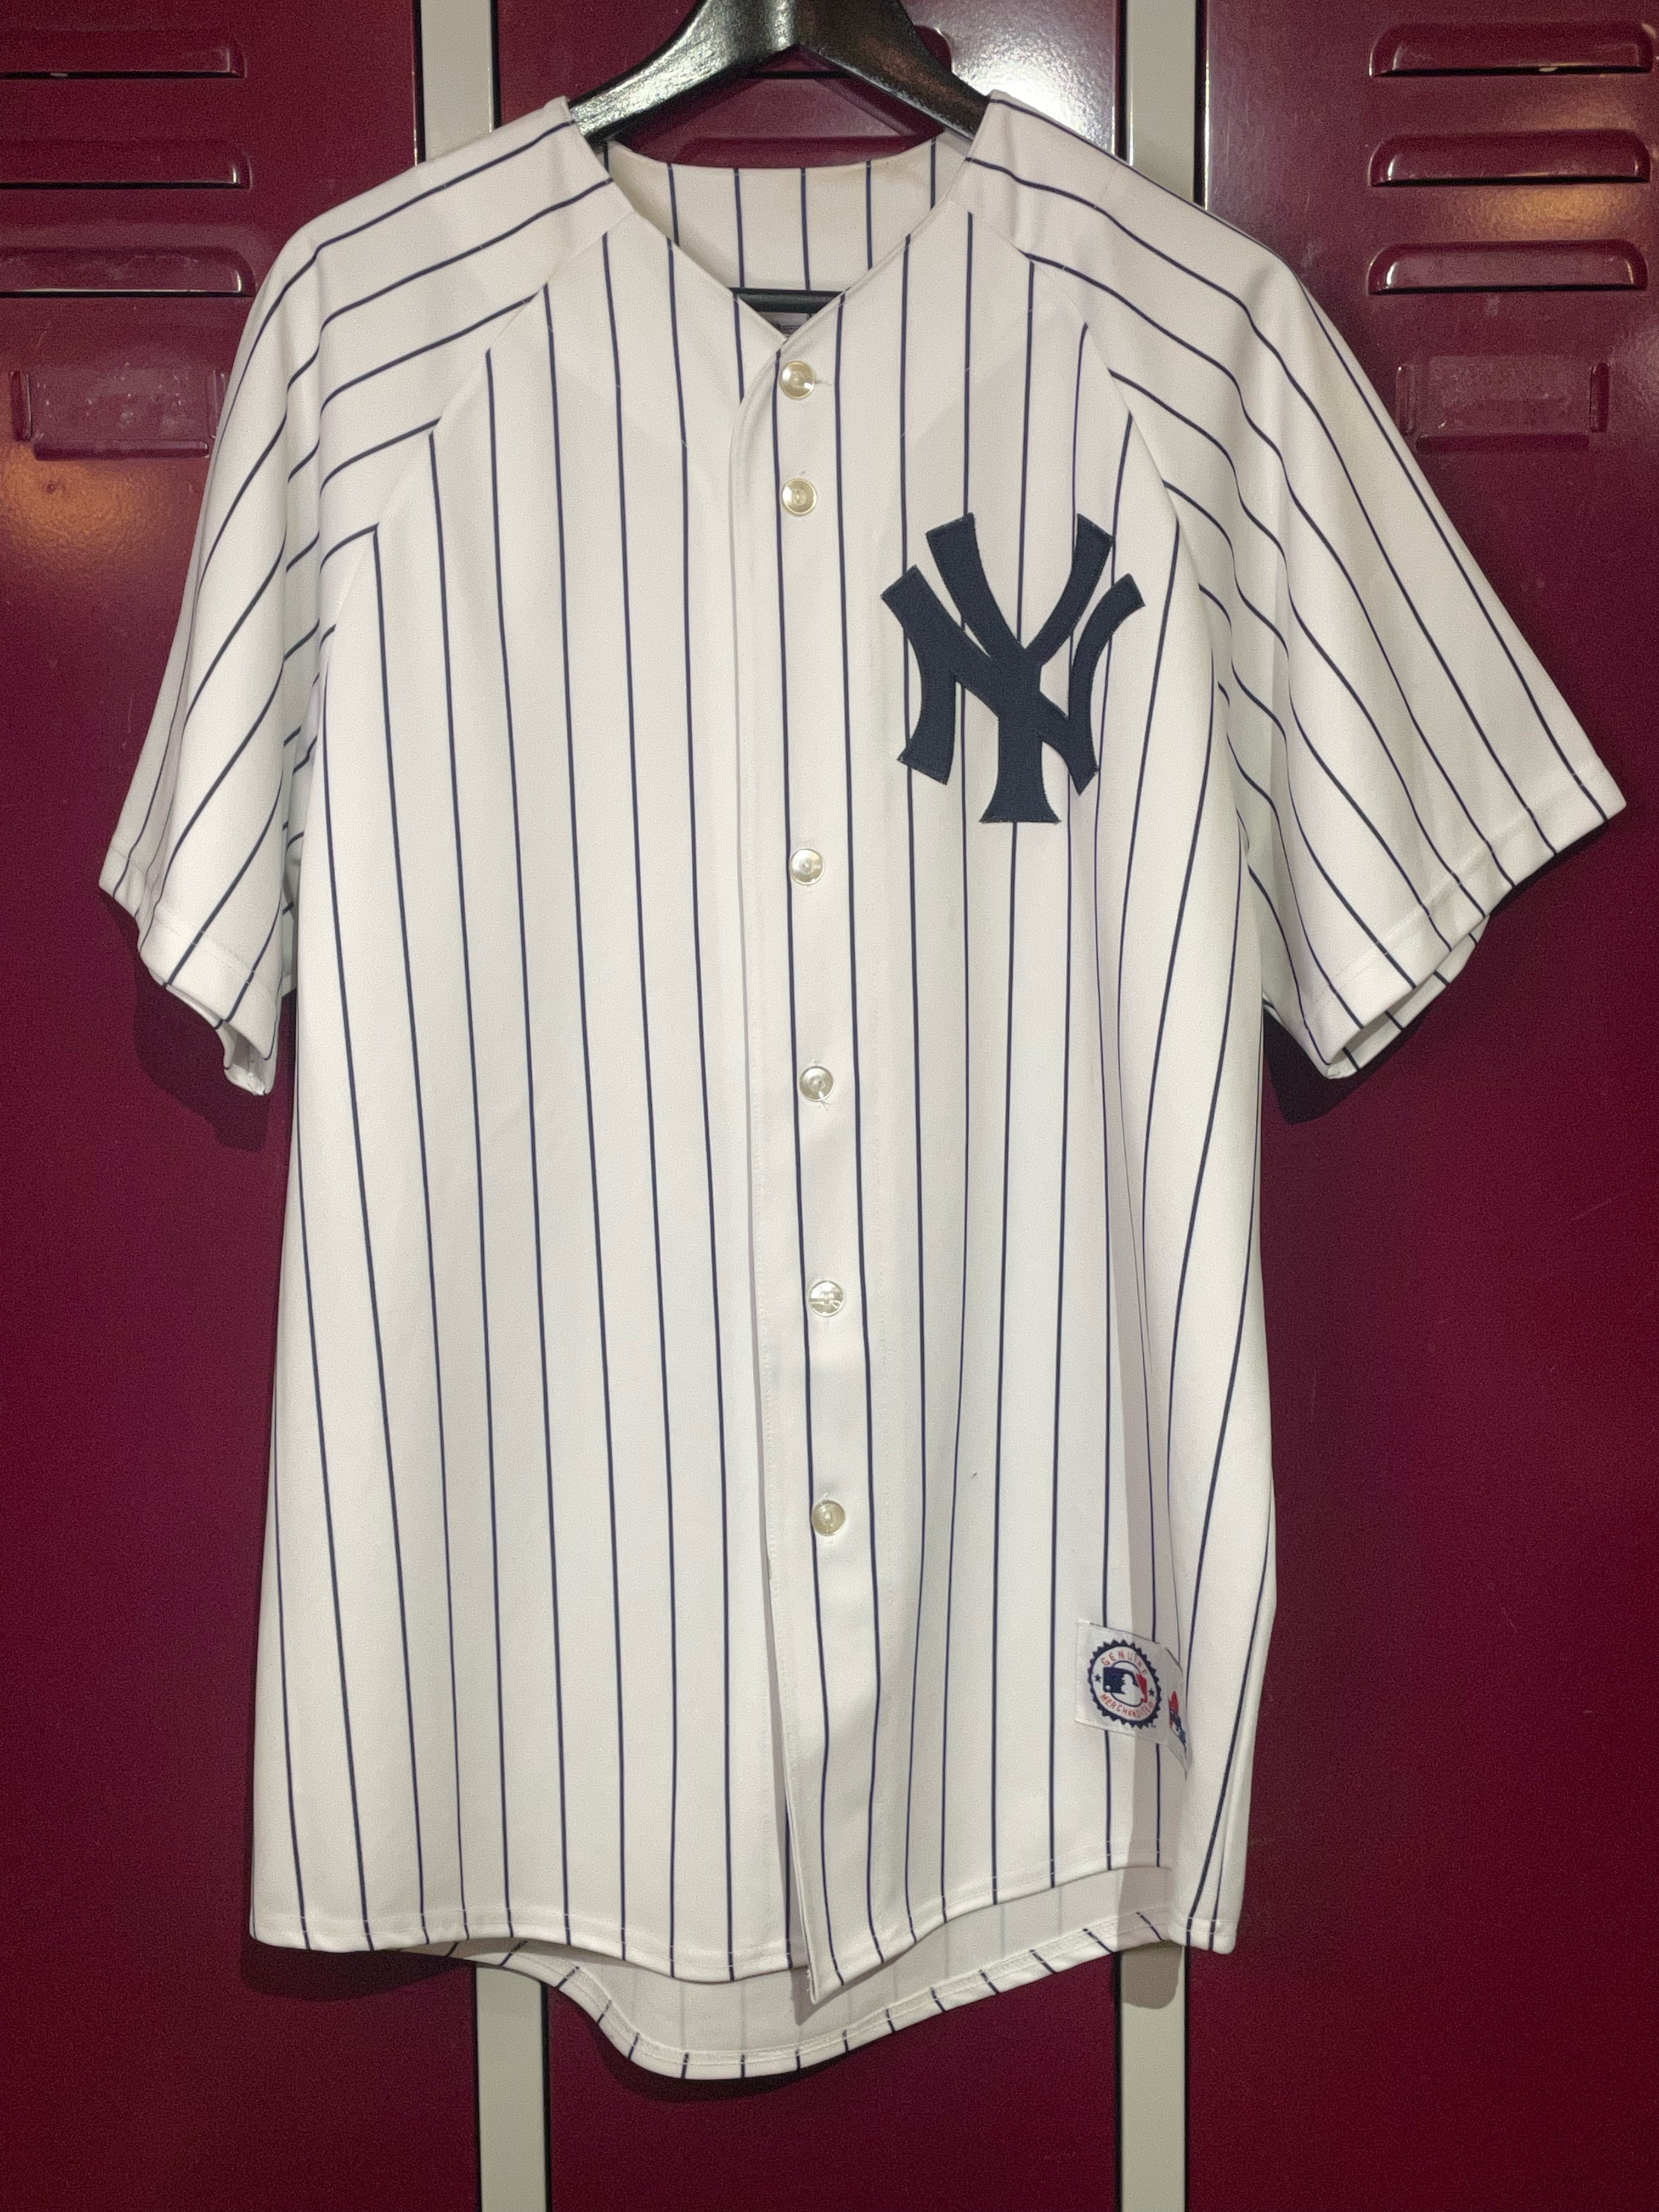 Majestic, Shirts, New York Yankees Majestic Jersey